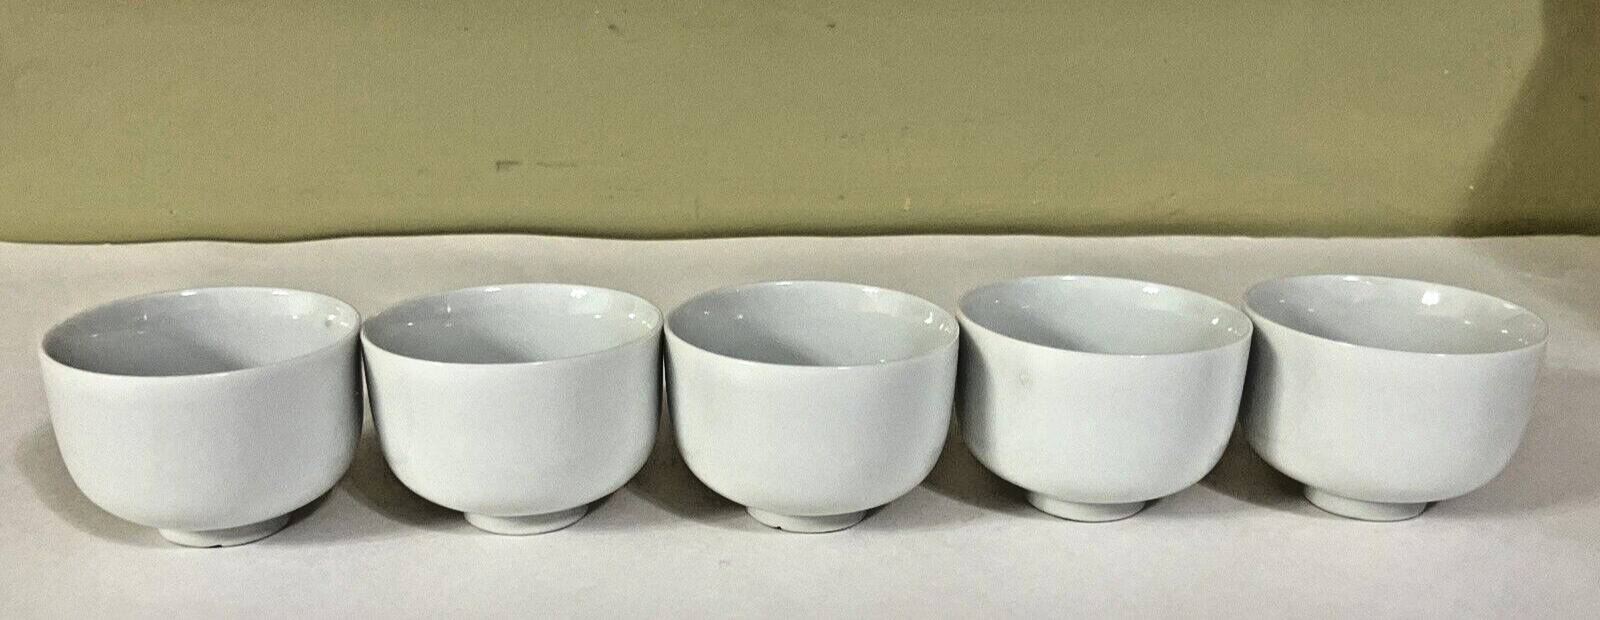 5 White Porcelain Tea Cups Good for Tea or Sake